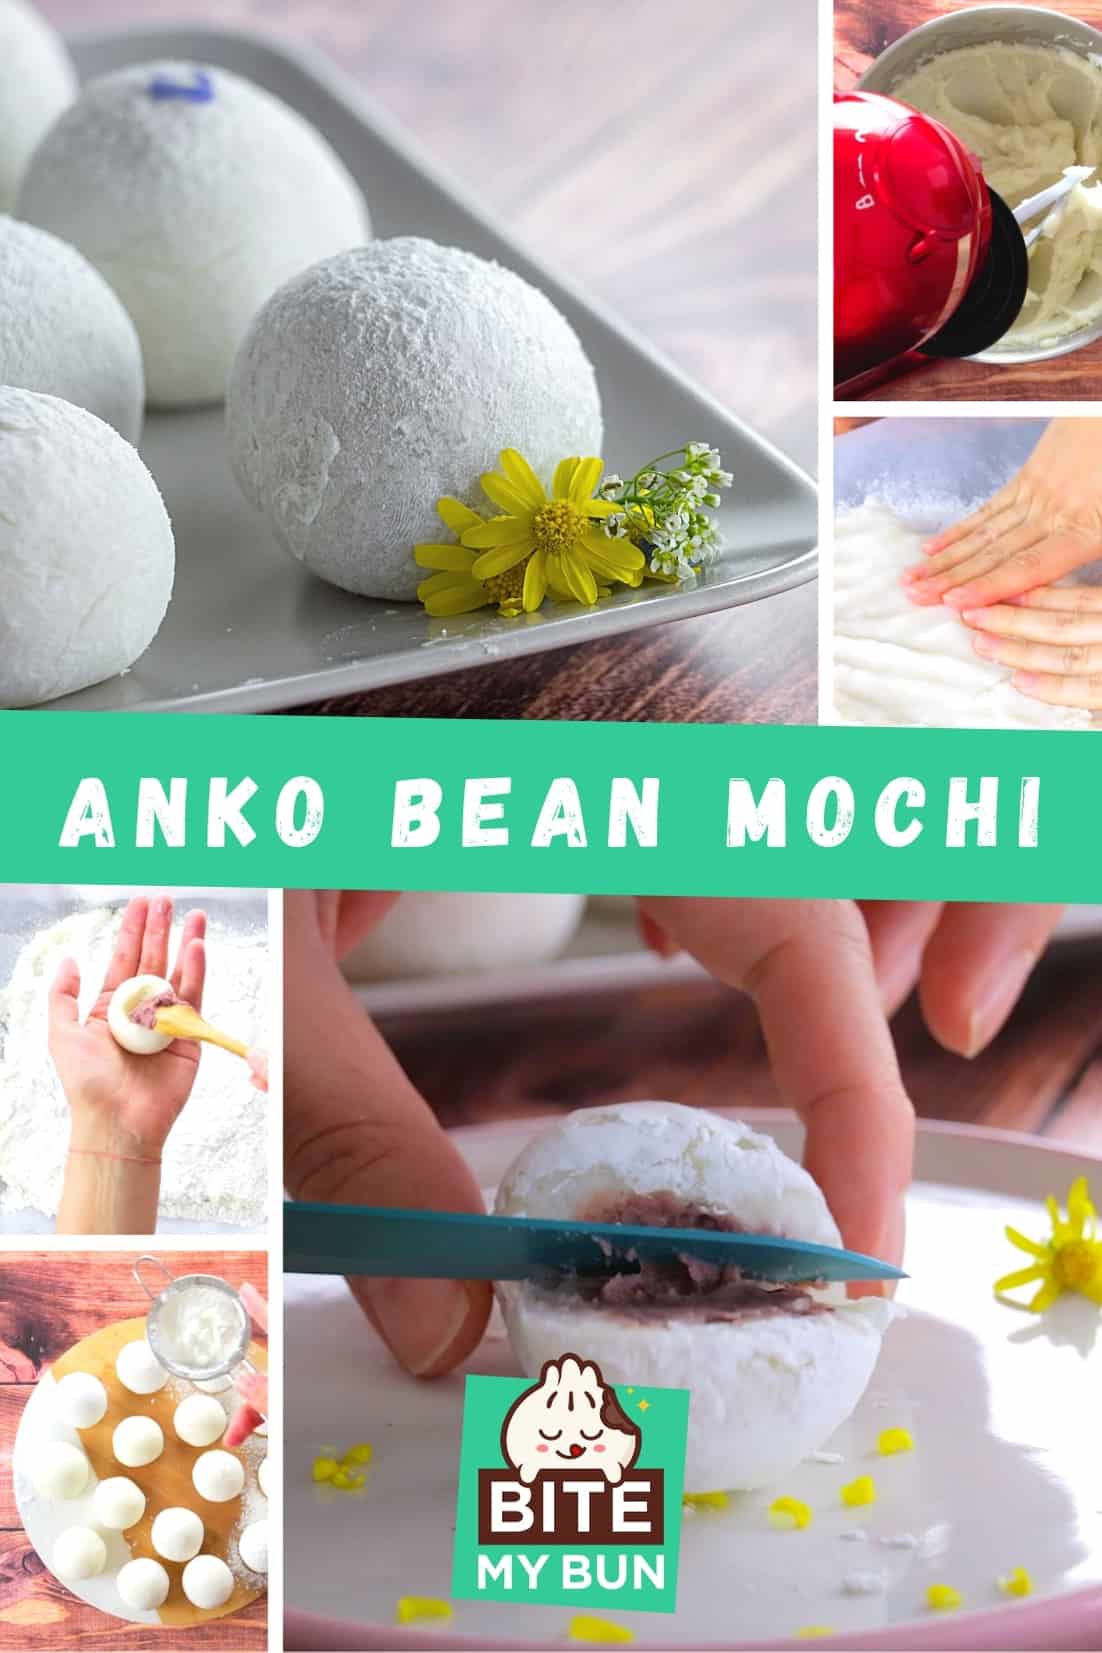 Anko bean mochi